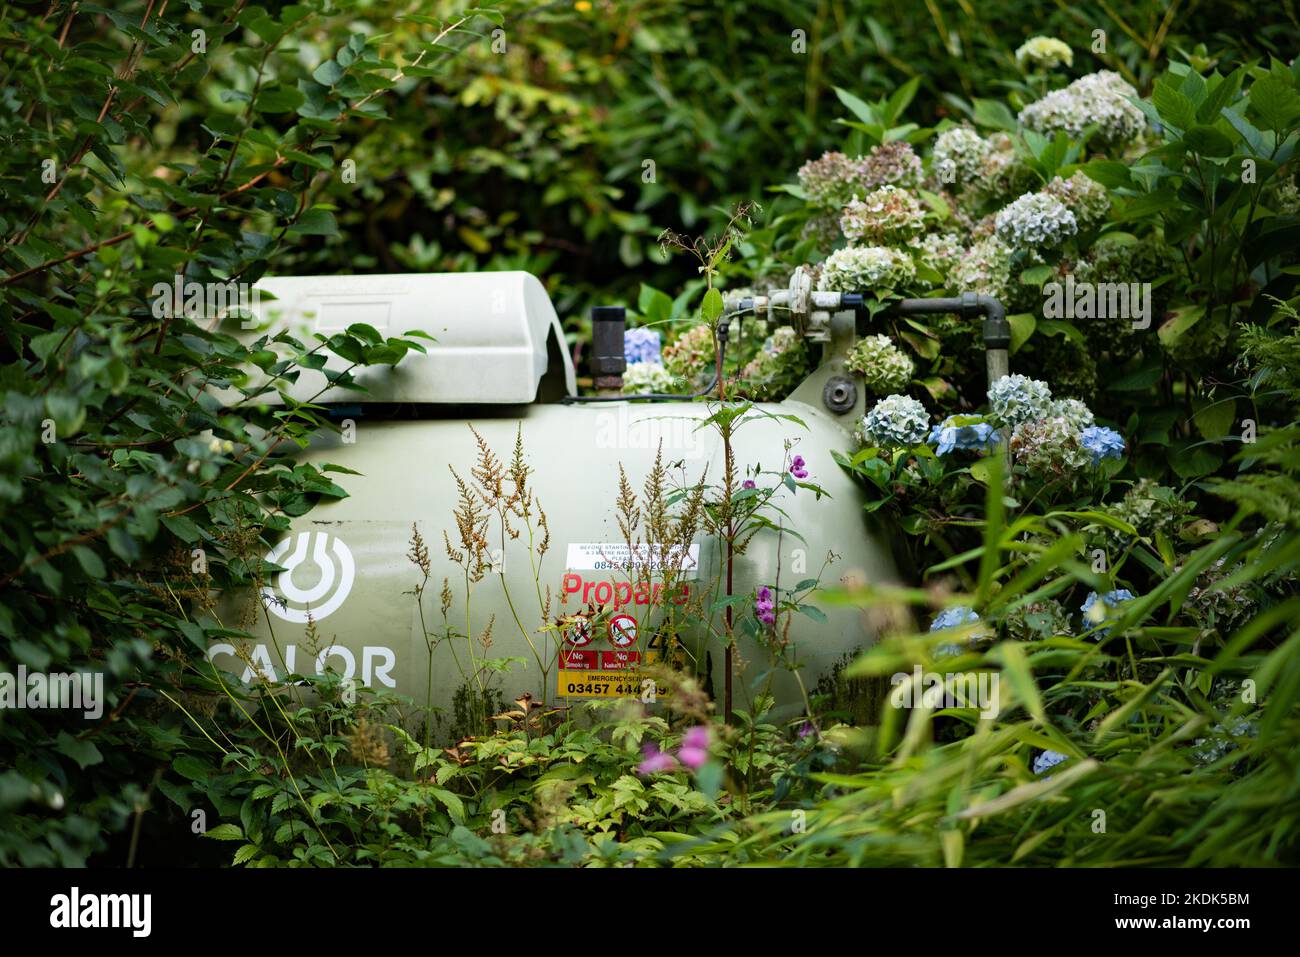 Ein Calor-Tank in einem Garten, Chipping, Preston, Lancashire. Stockfoto